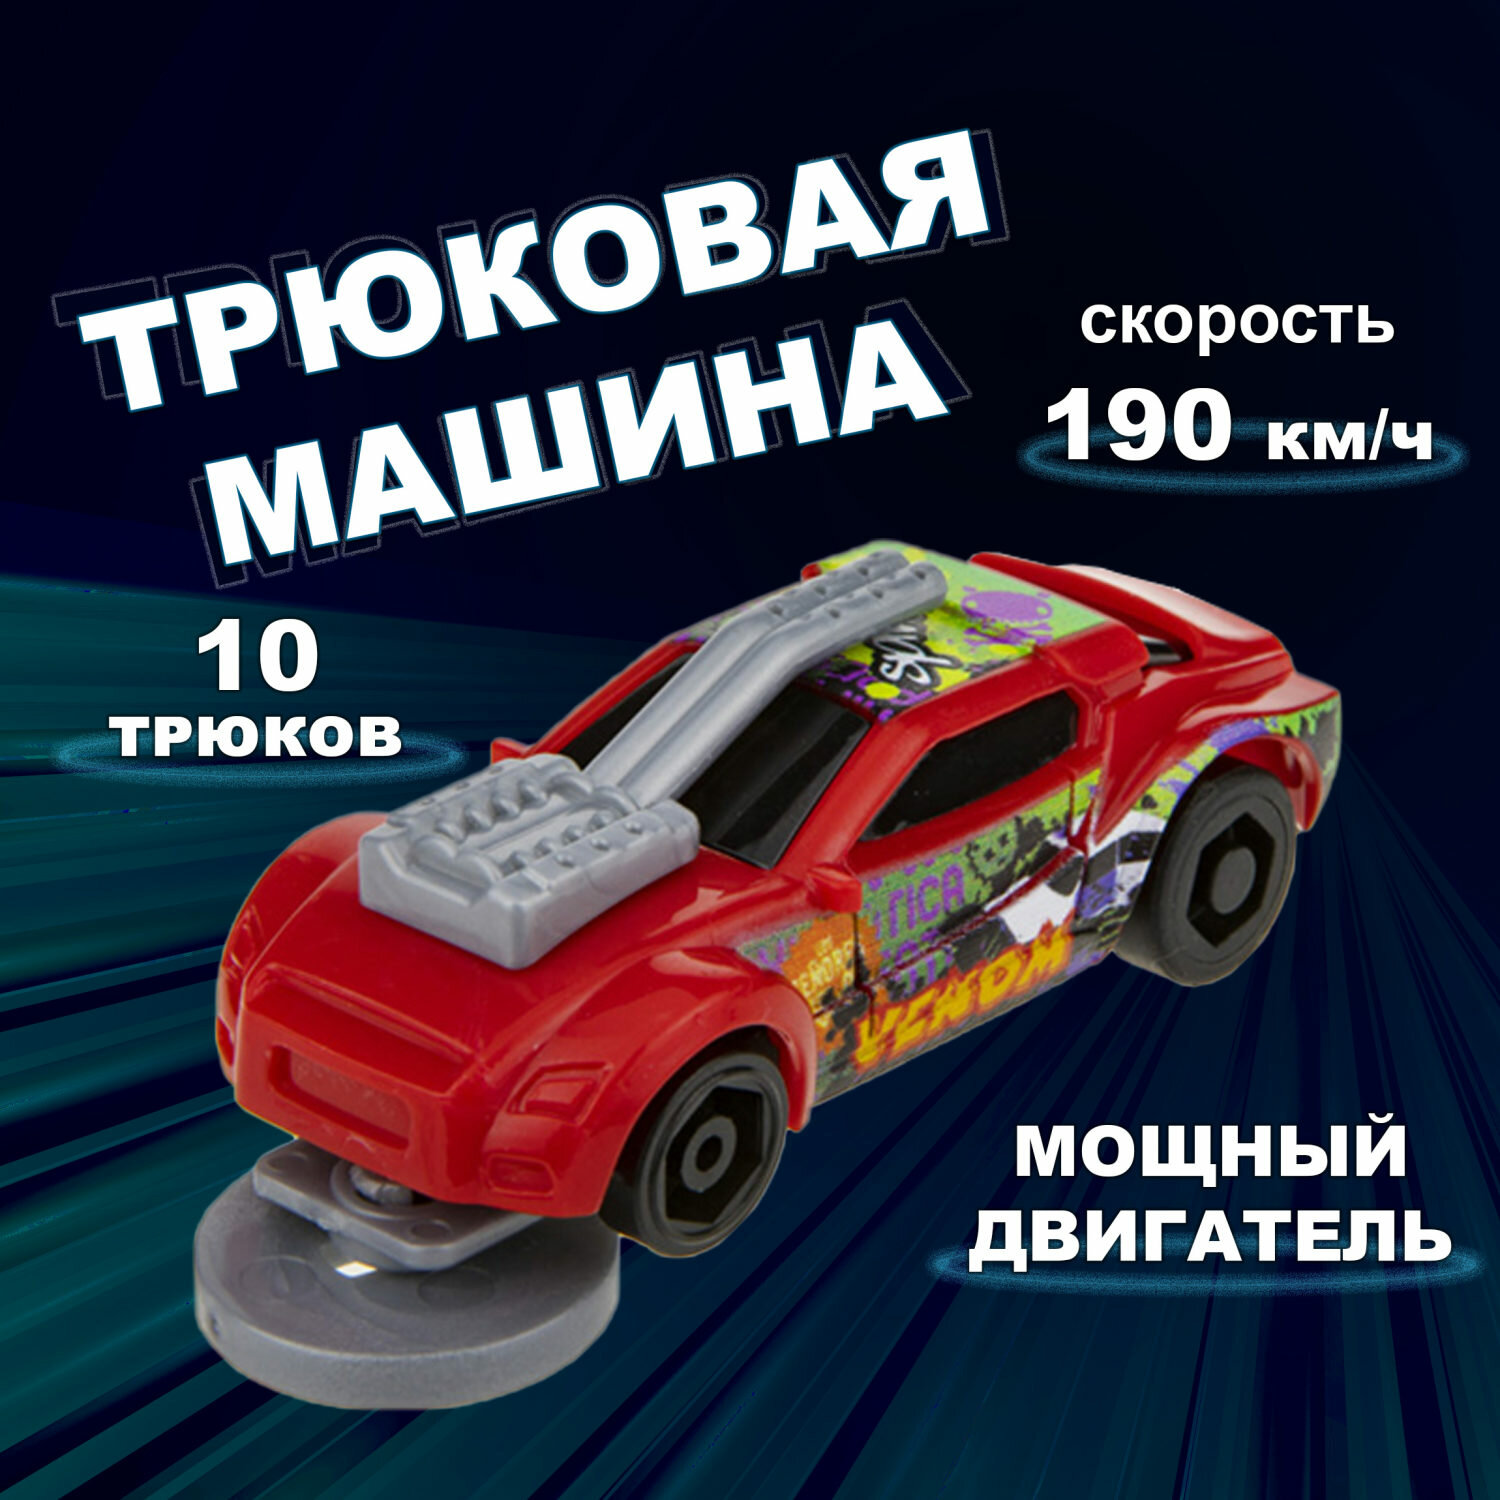 Машинка игрушка для мальчика 1toy Трюк-трек с 2 аксессуарами фрикционная пластиковая игрушечный транспорт